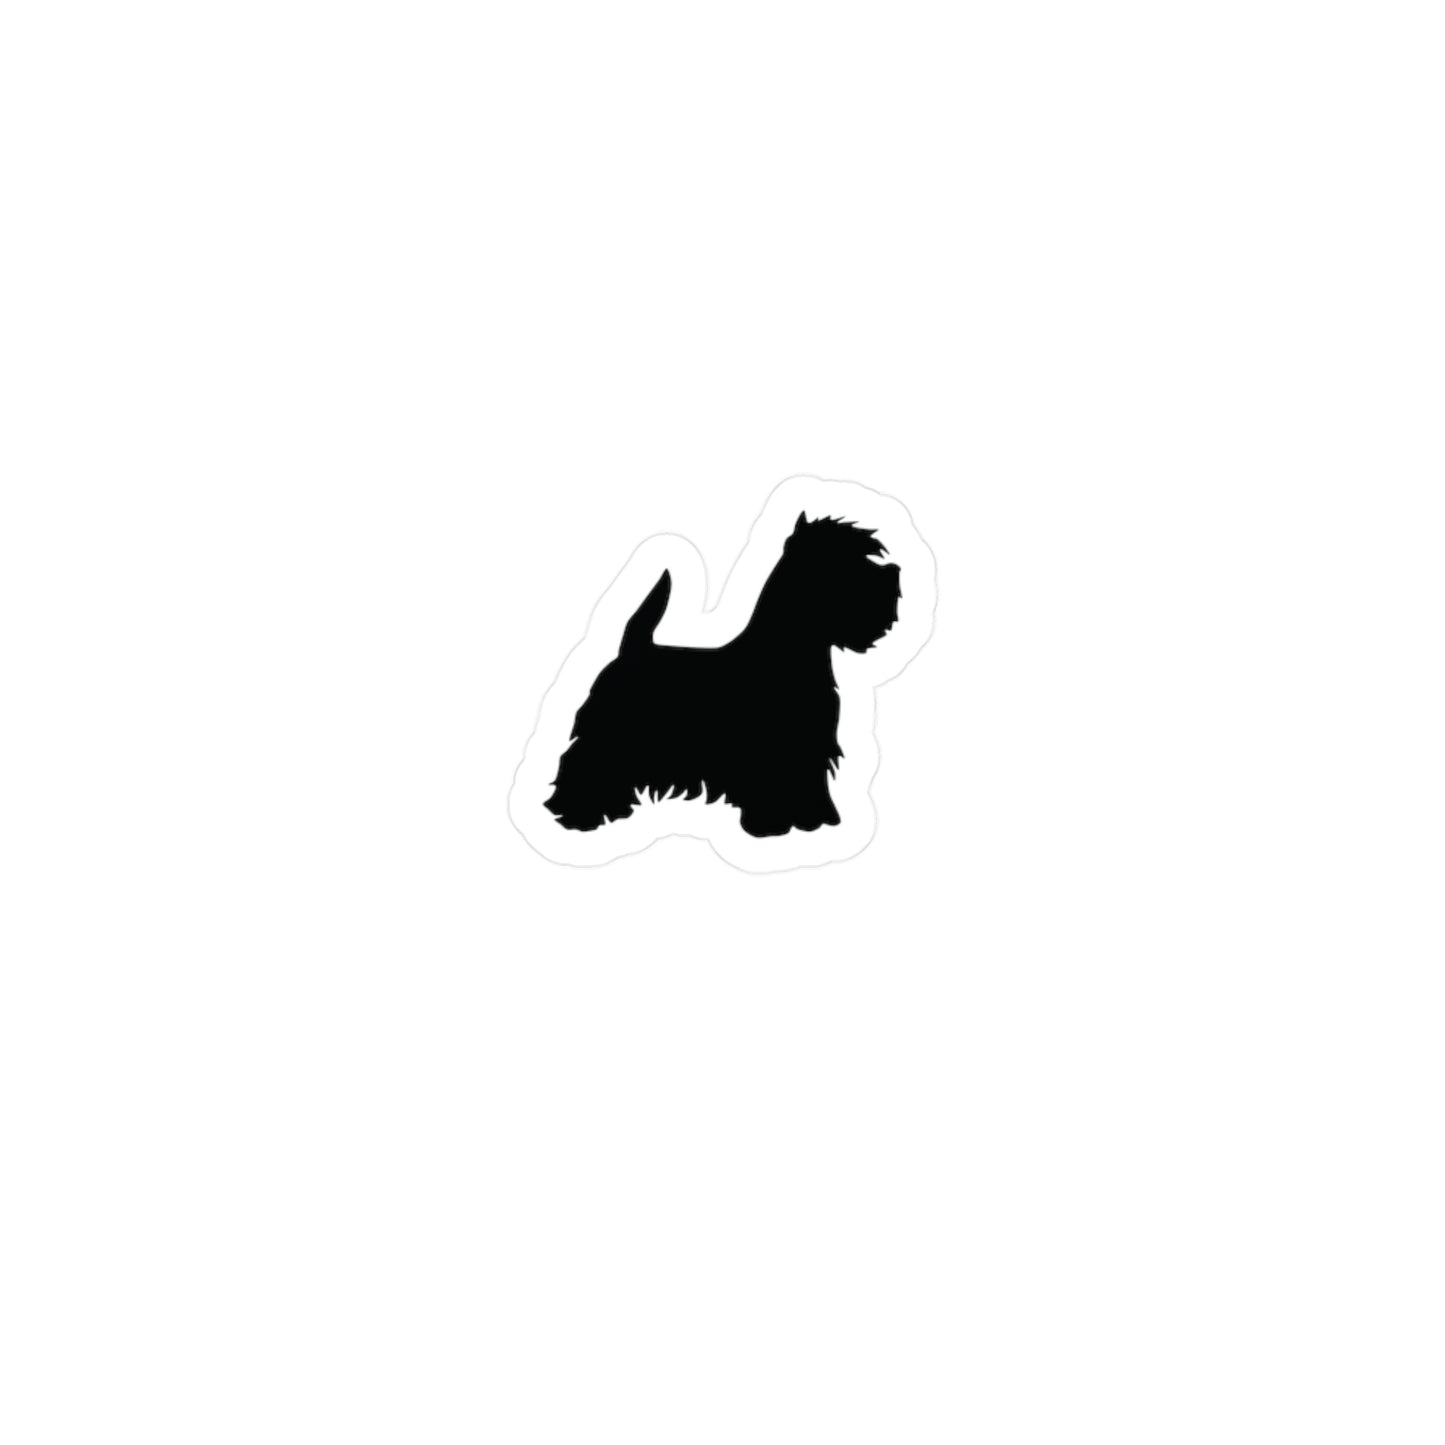 West Highland Terrier Dog Breed Westie Vinyl Sticker Decal Sticker Dog Mom Gift